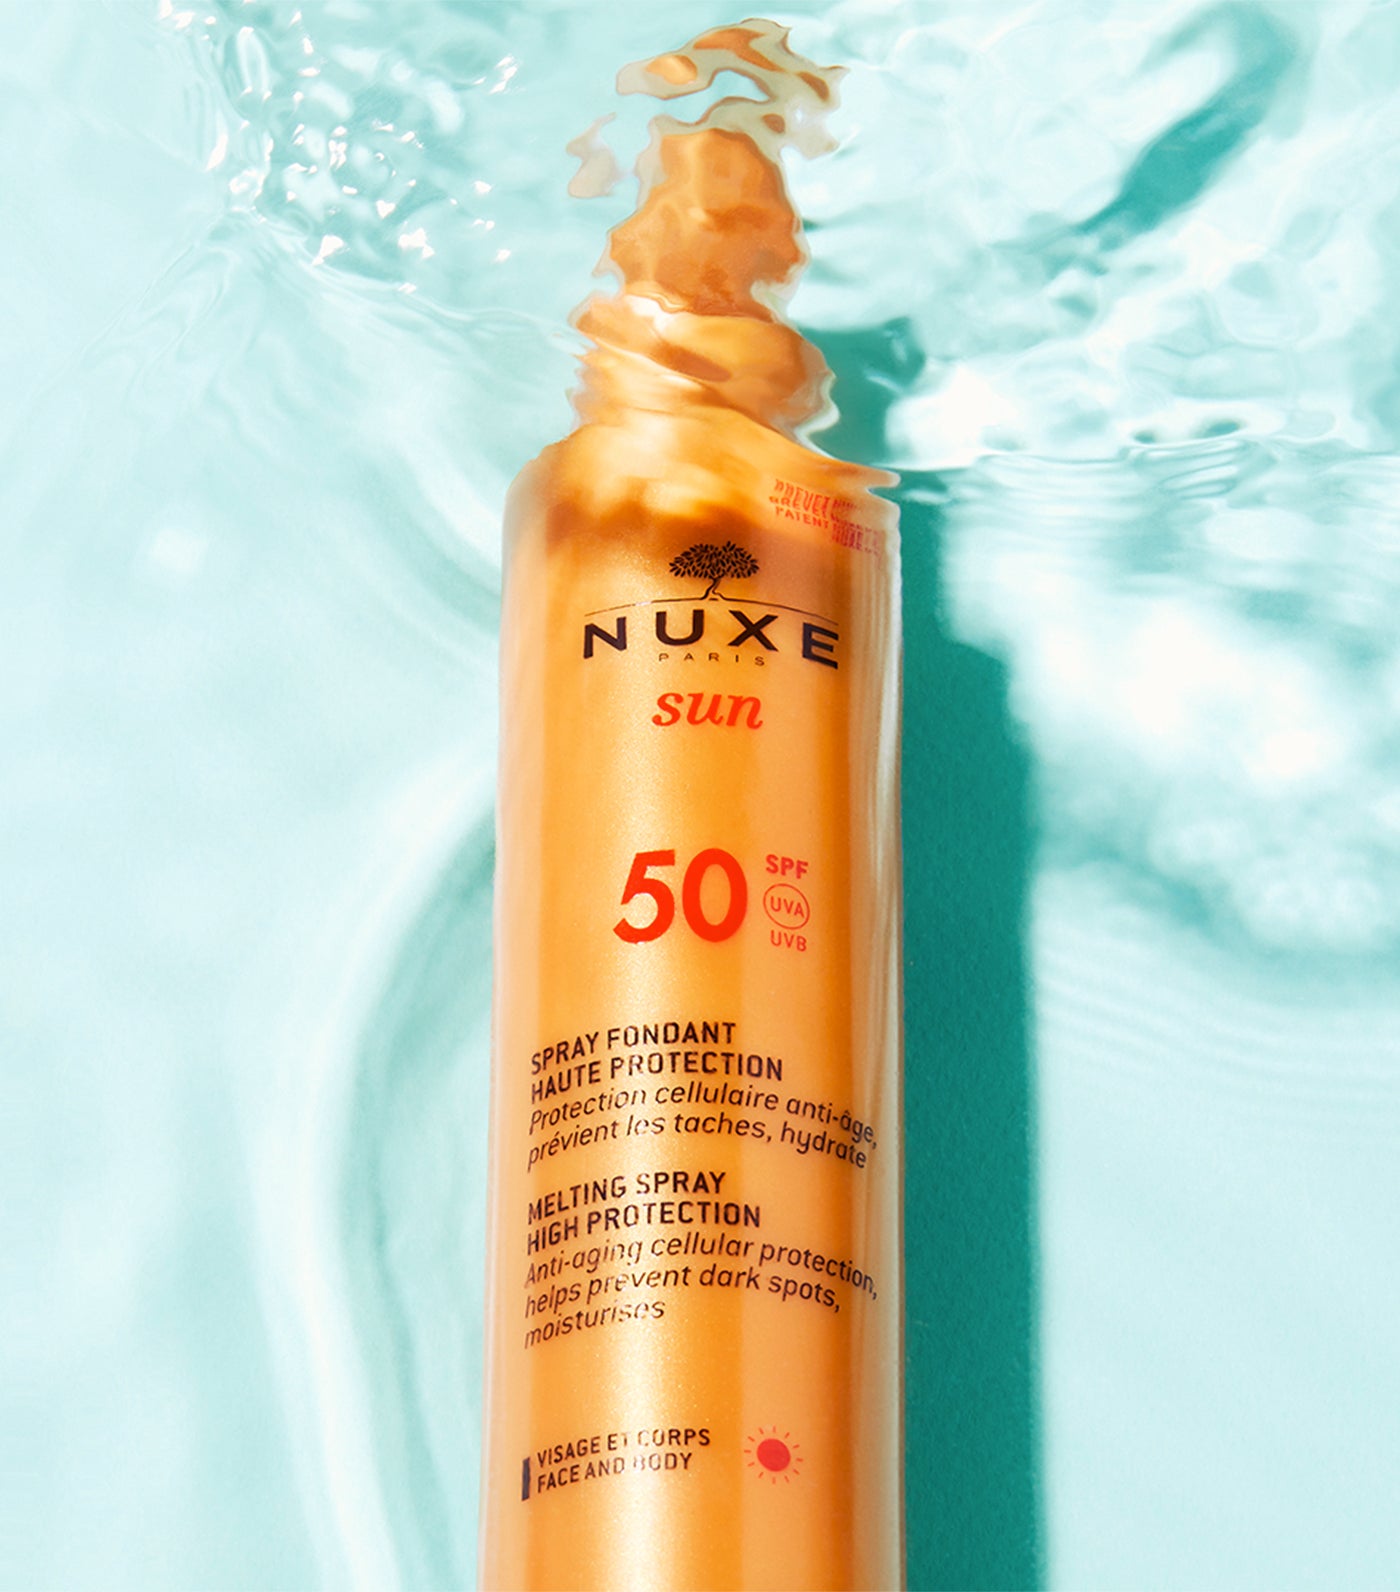 Nuxe Sun Delicious Melting Sun Spray High Protection SPF50 face and body